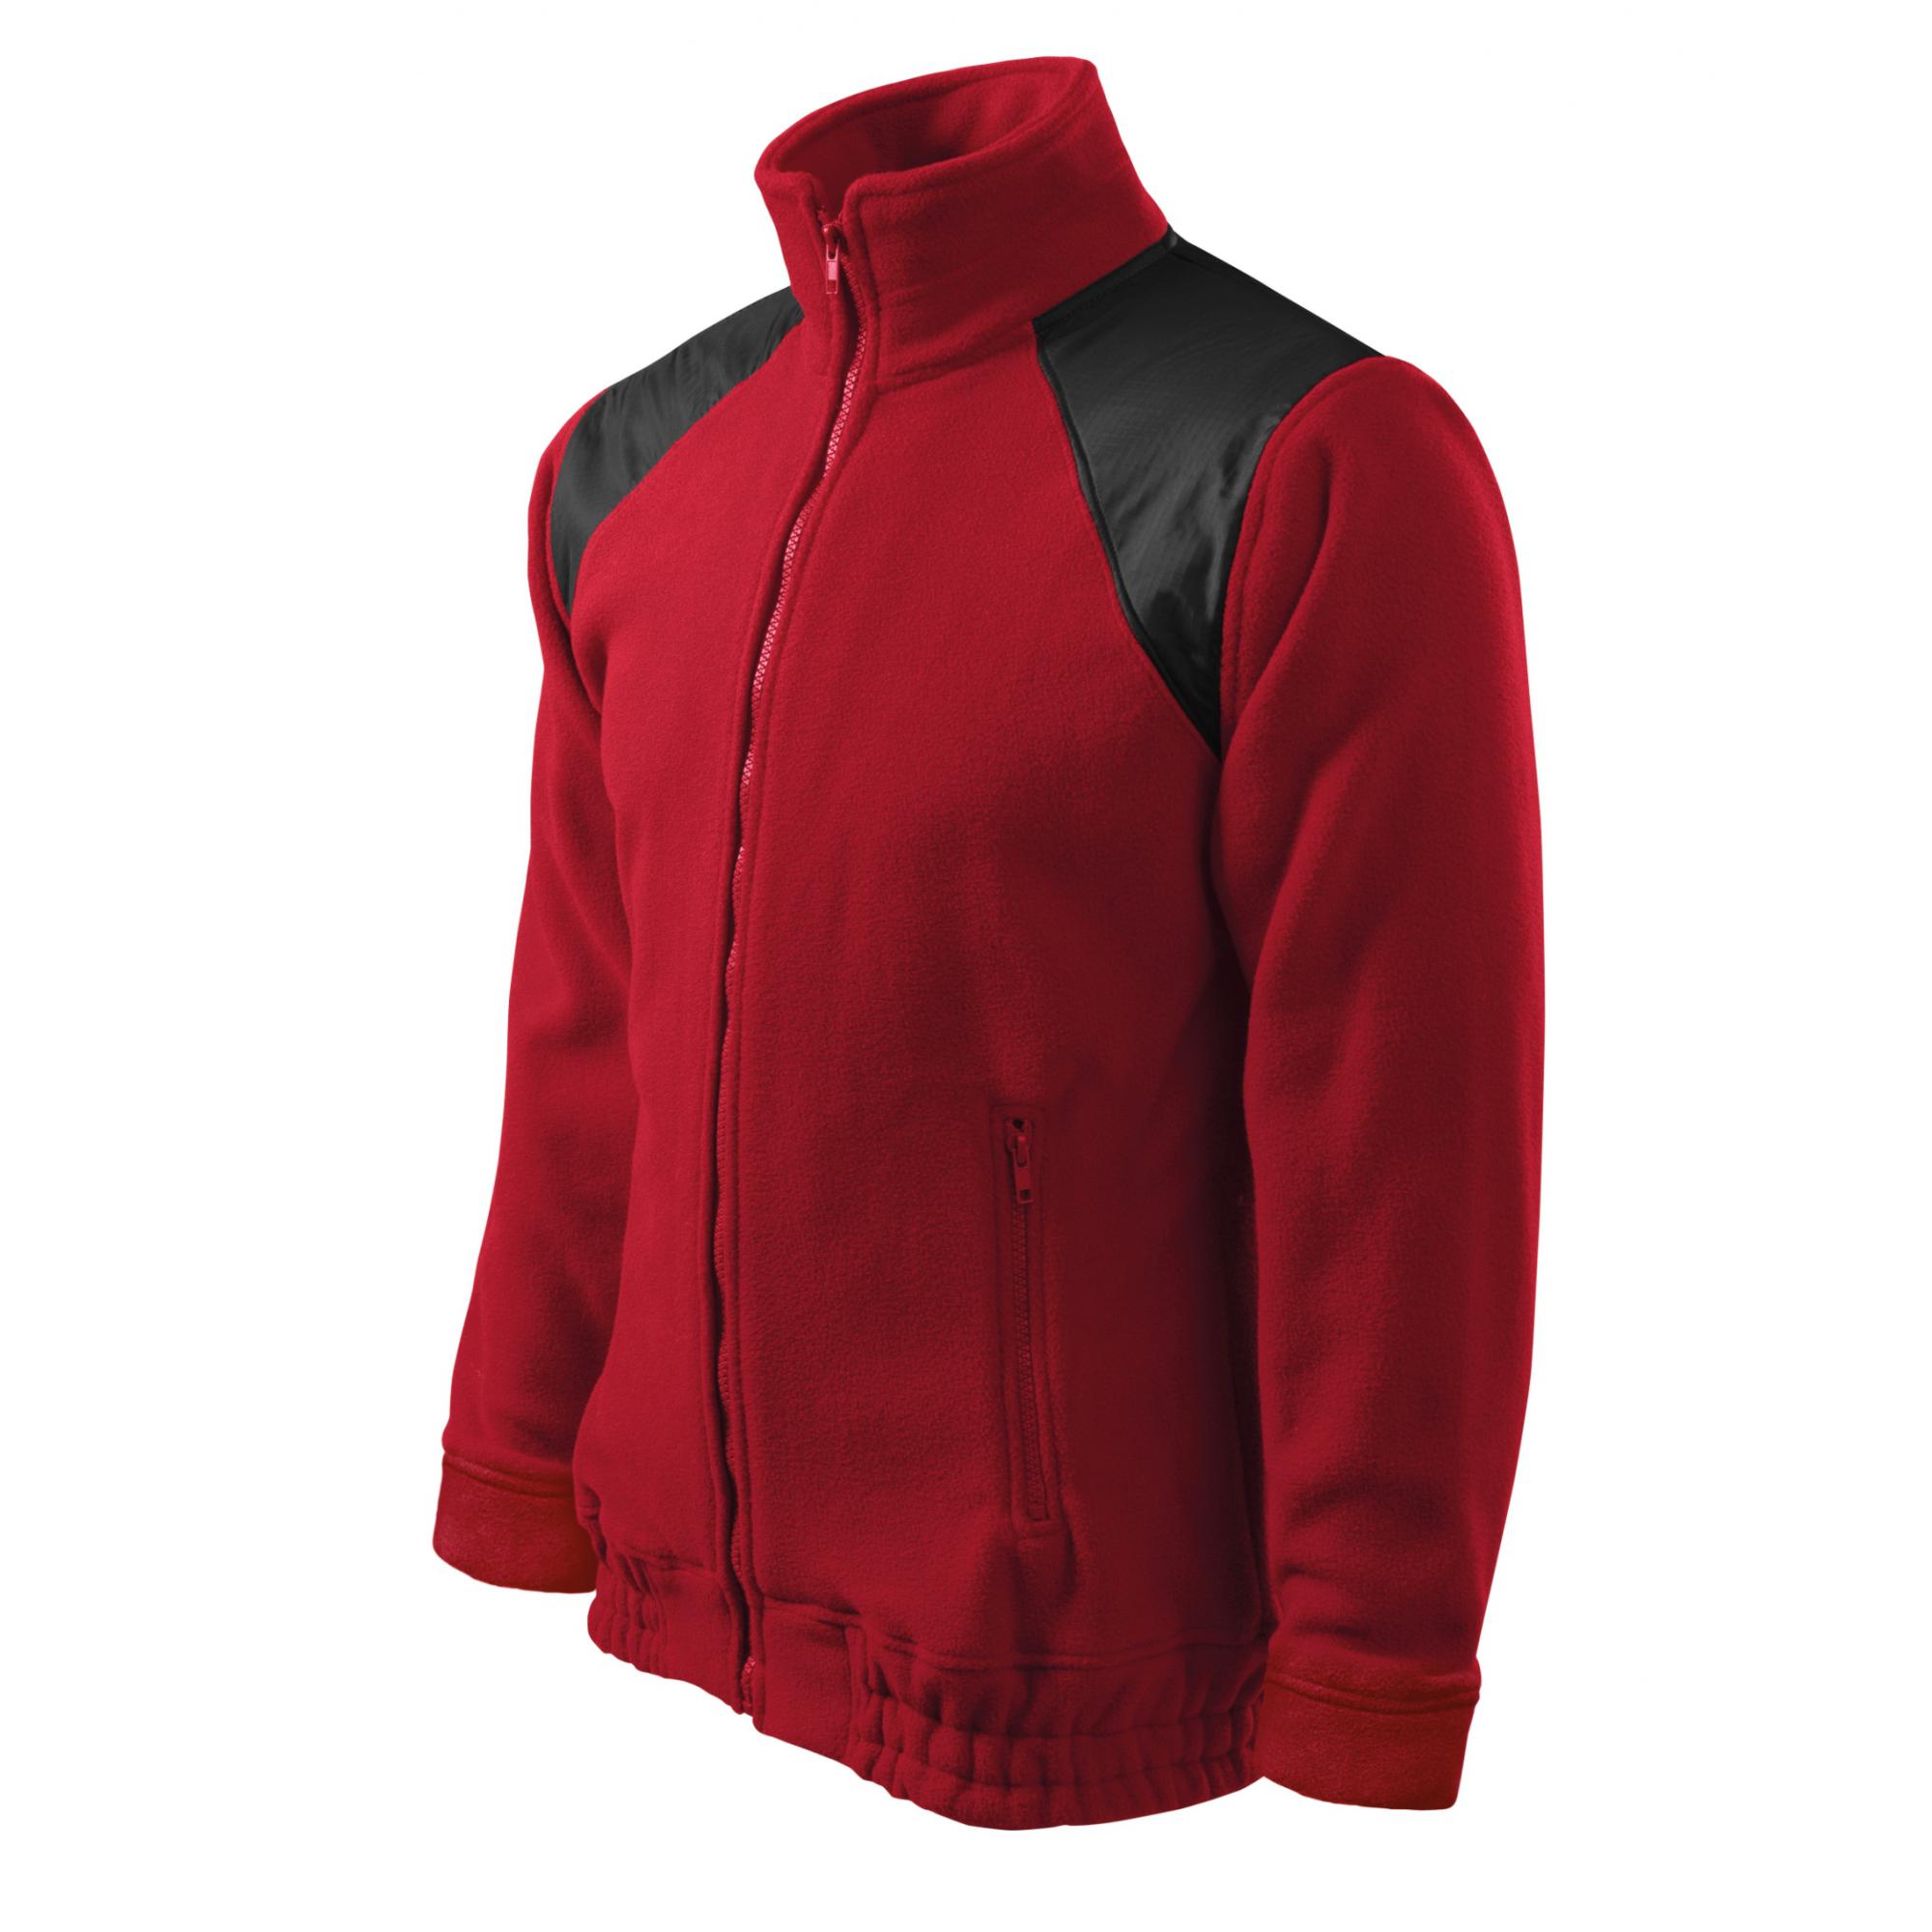 Jachetă fleece unisex Jacket Hi-Q 506 Rosu marlboro 3XL